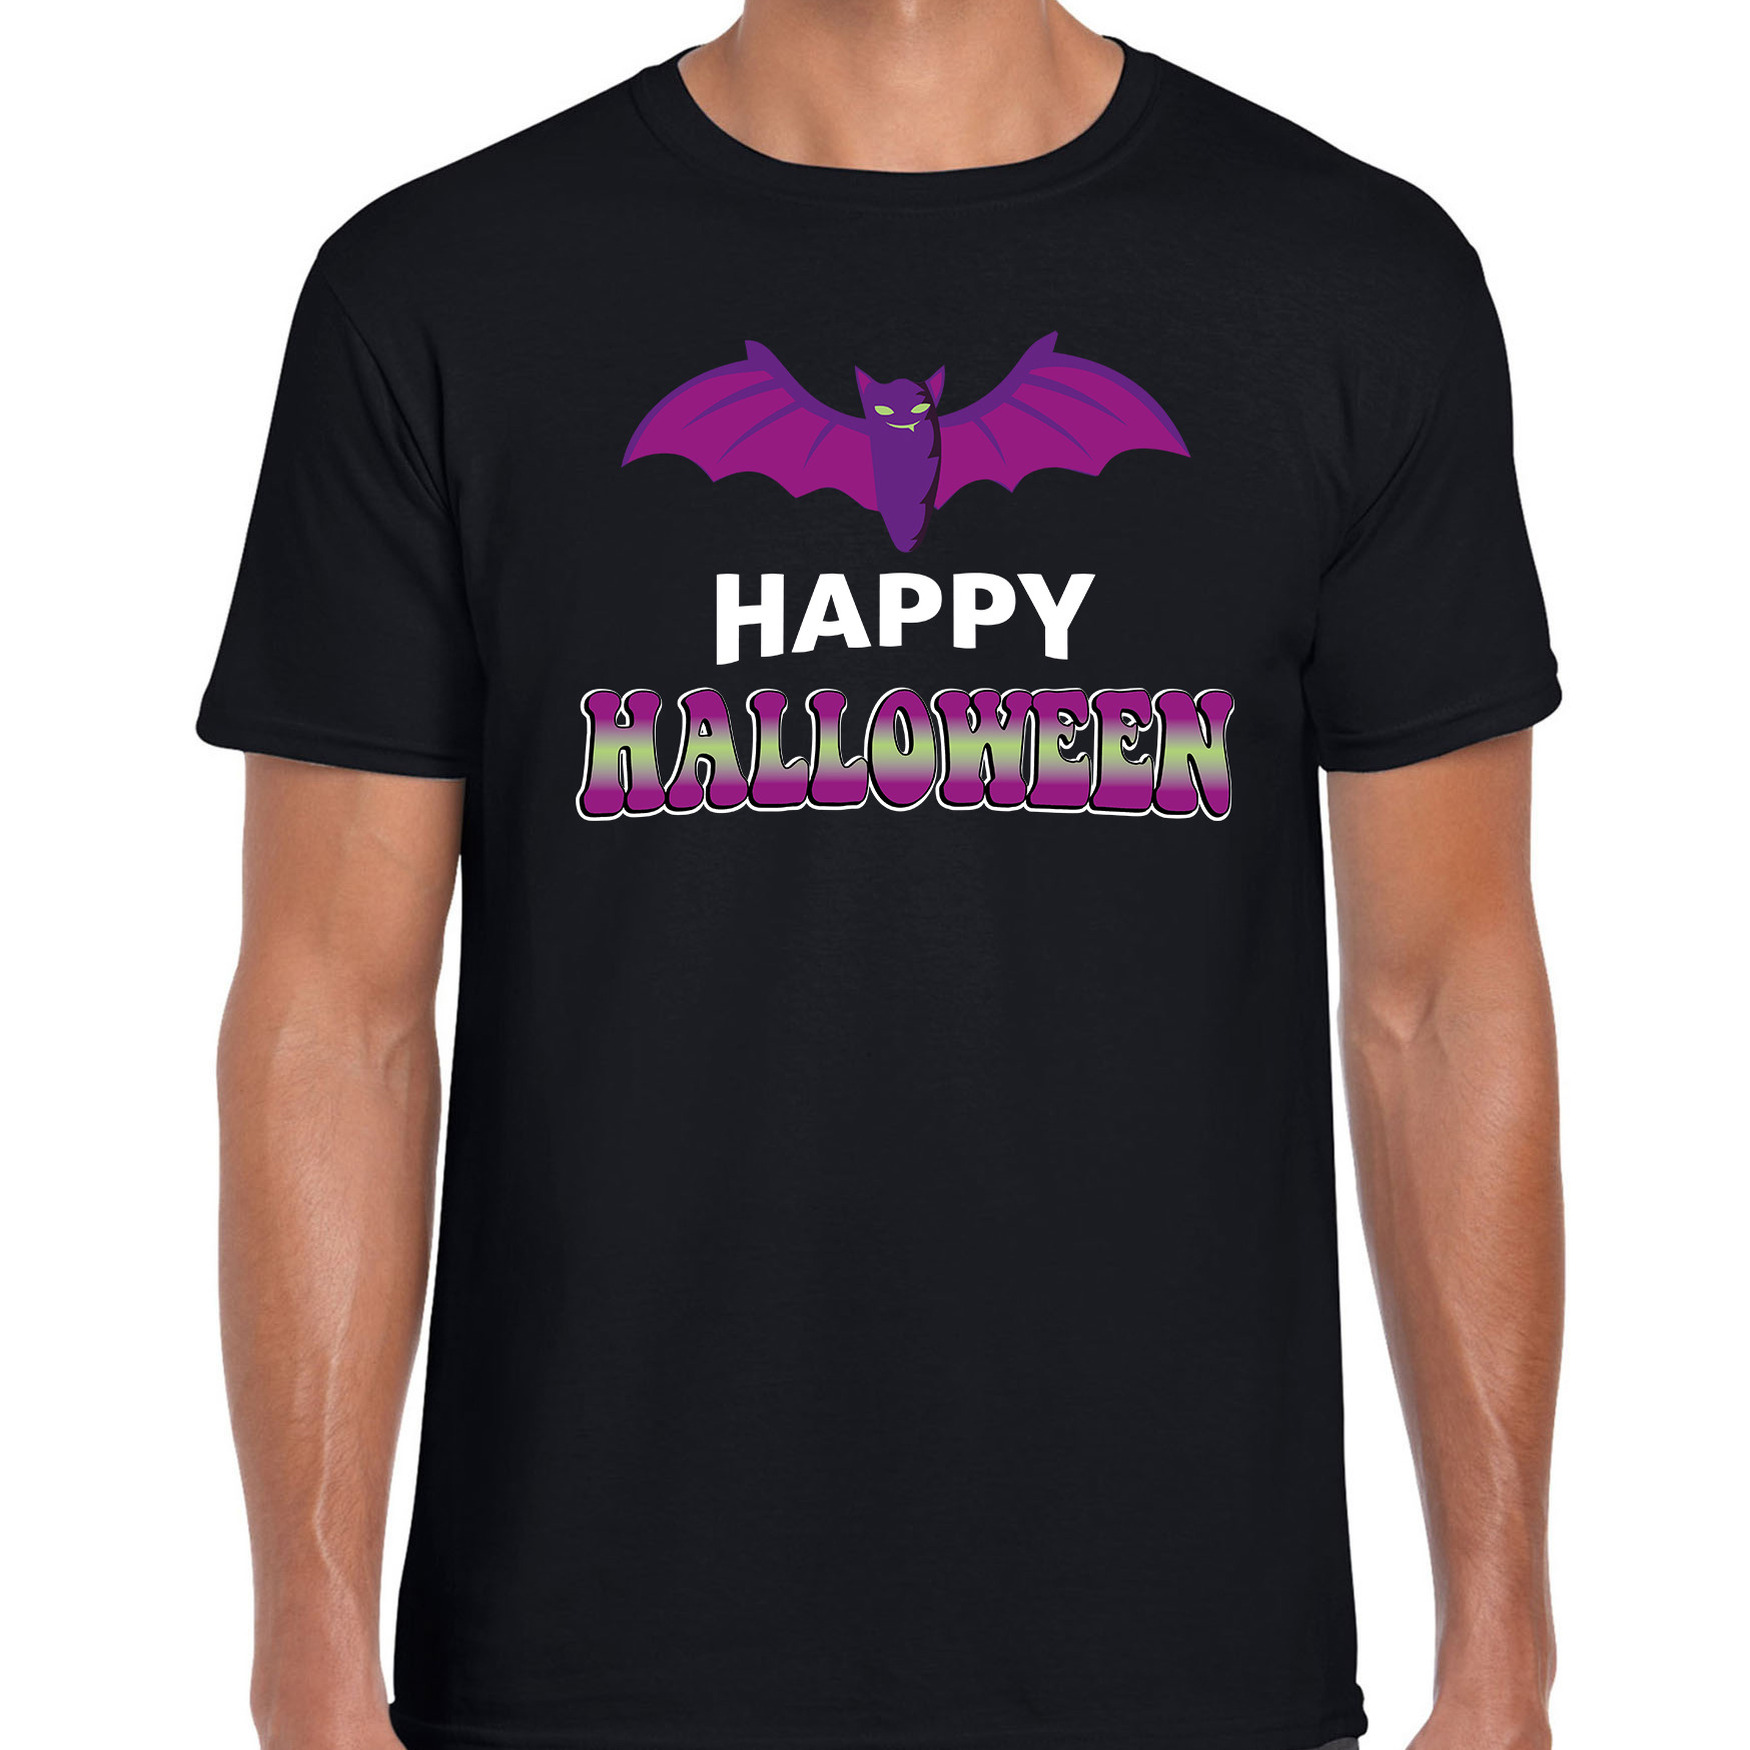 Halloween - Vleermuis / happy halloween verkleed t-shirt zwart voor heren